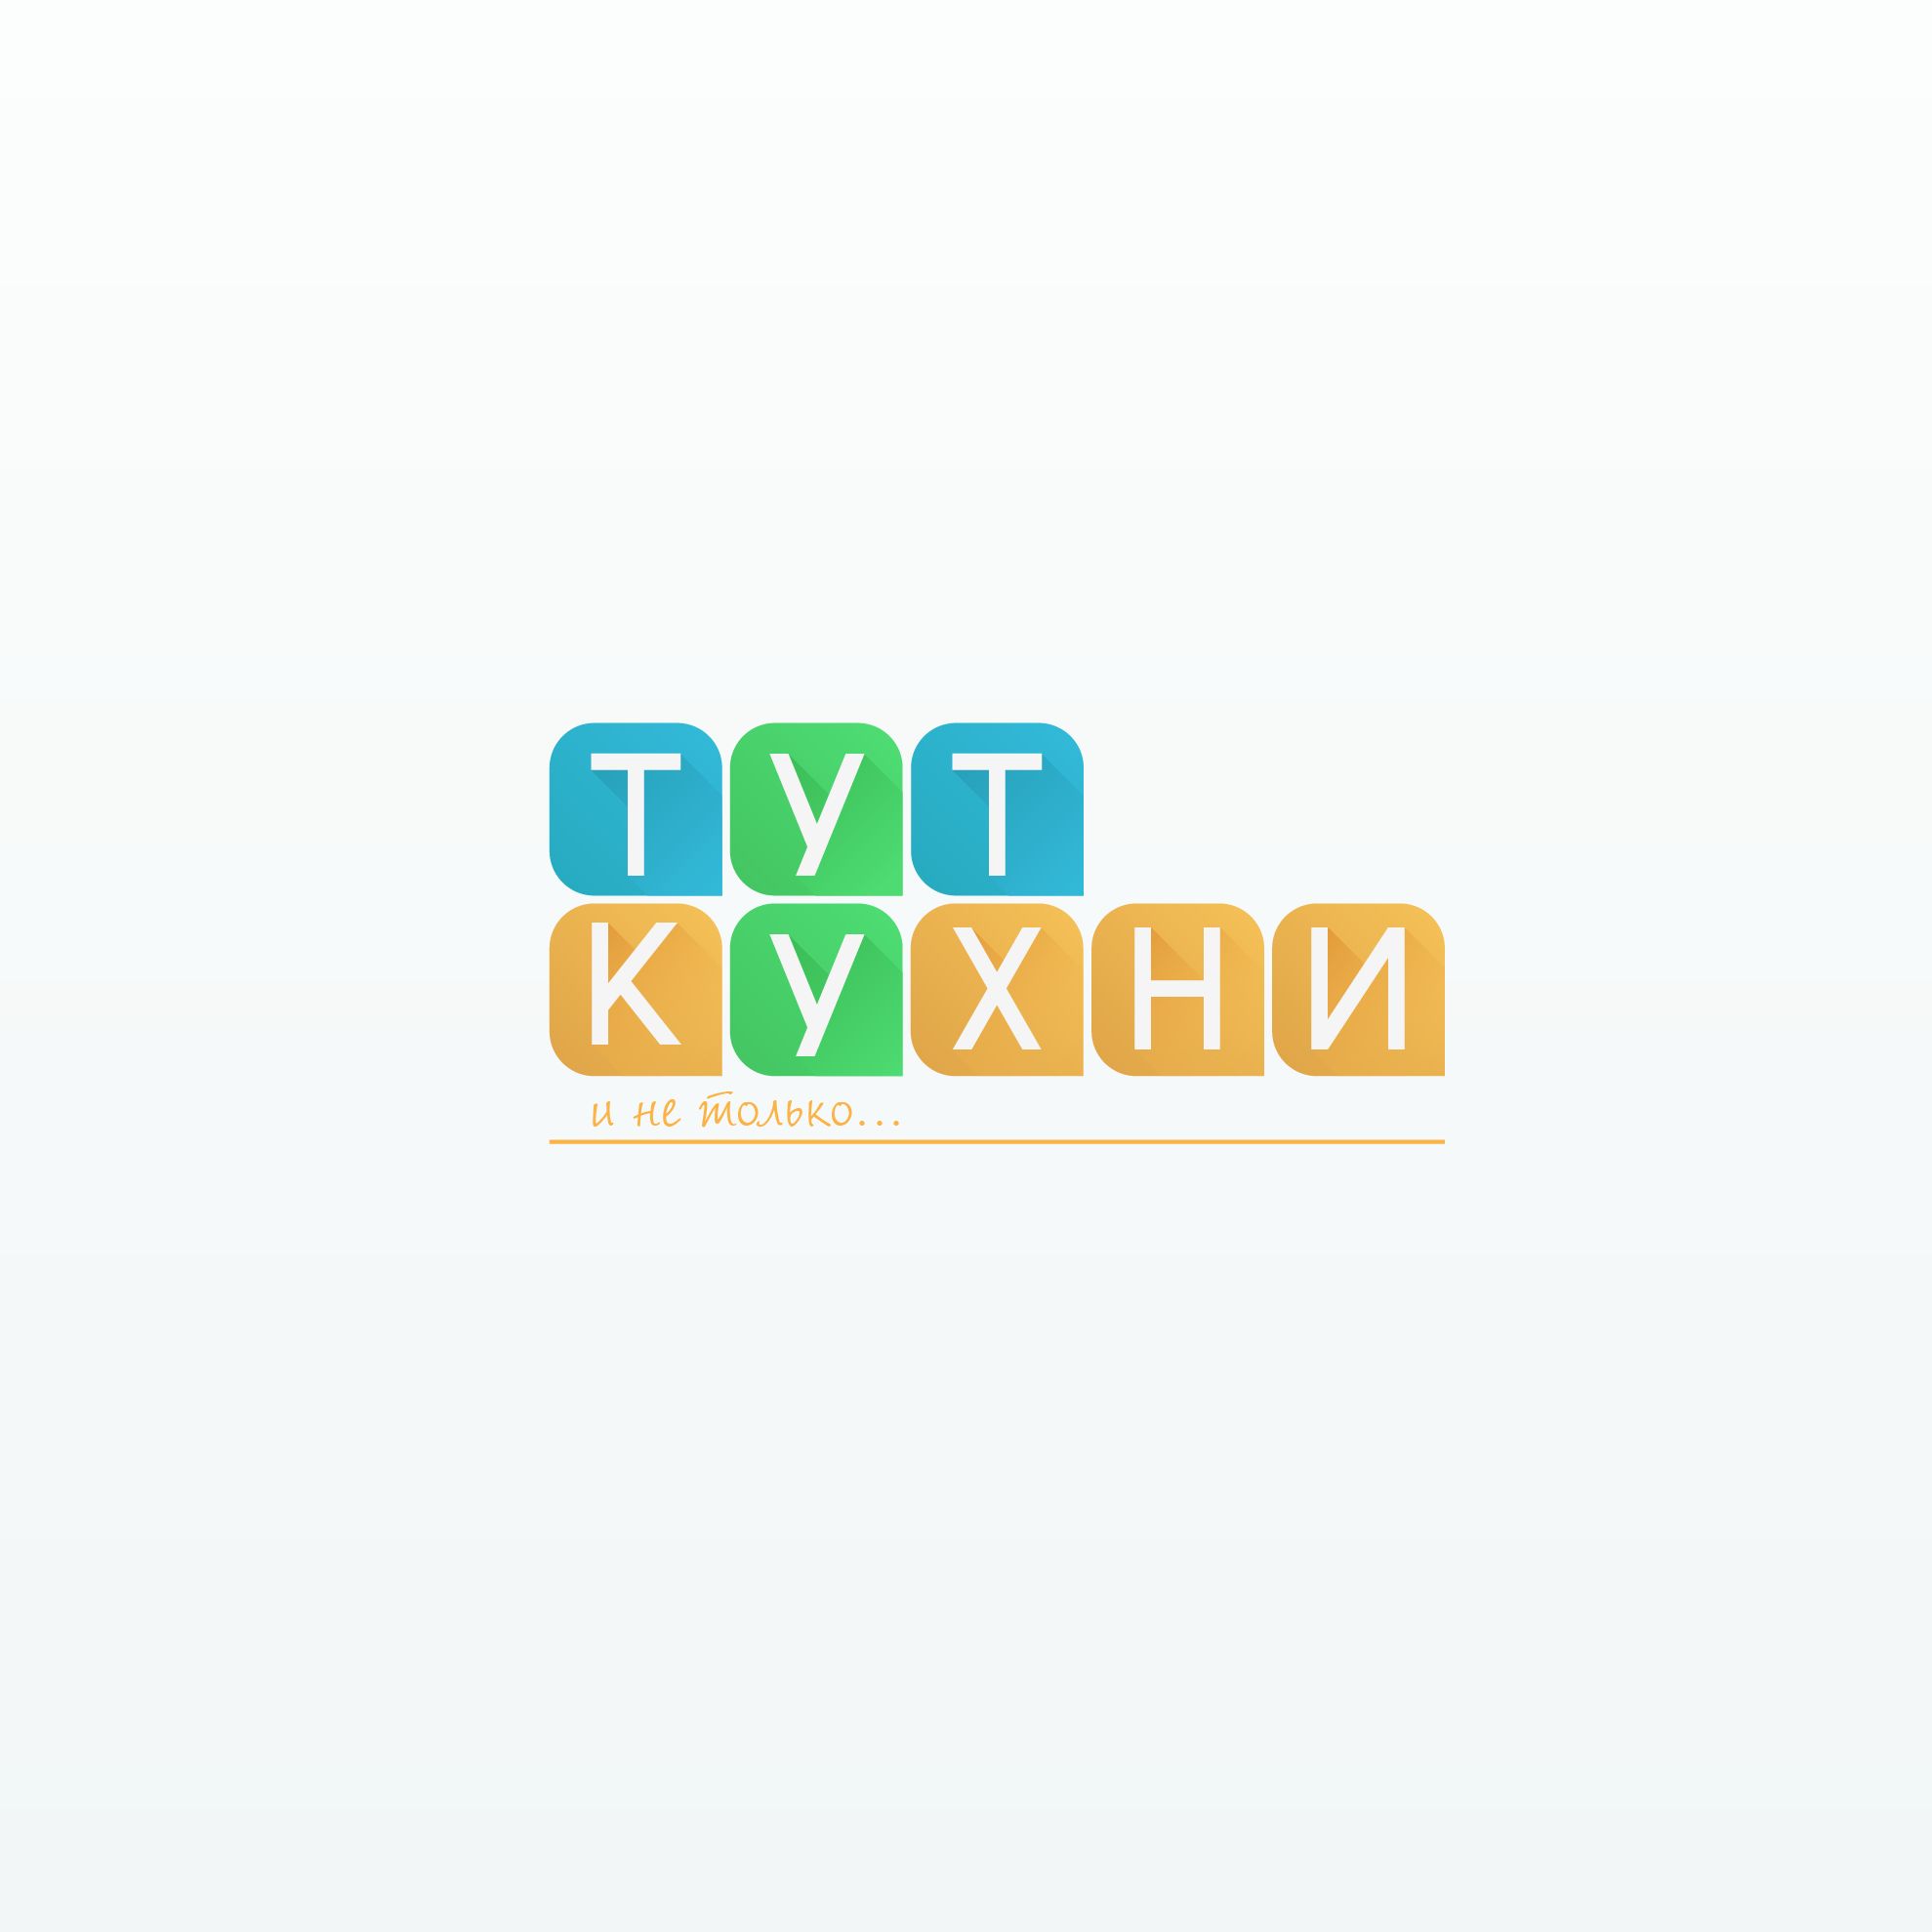 Логотип для Тут Кухни - дизайнер Tafur